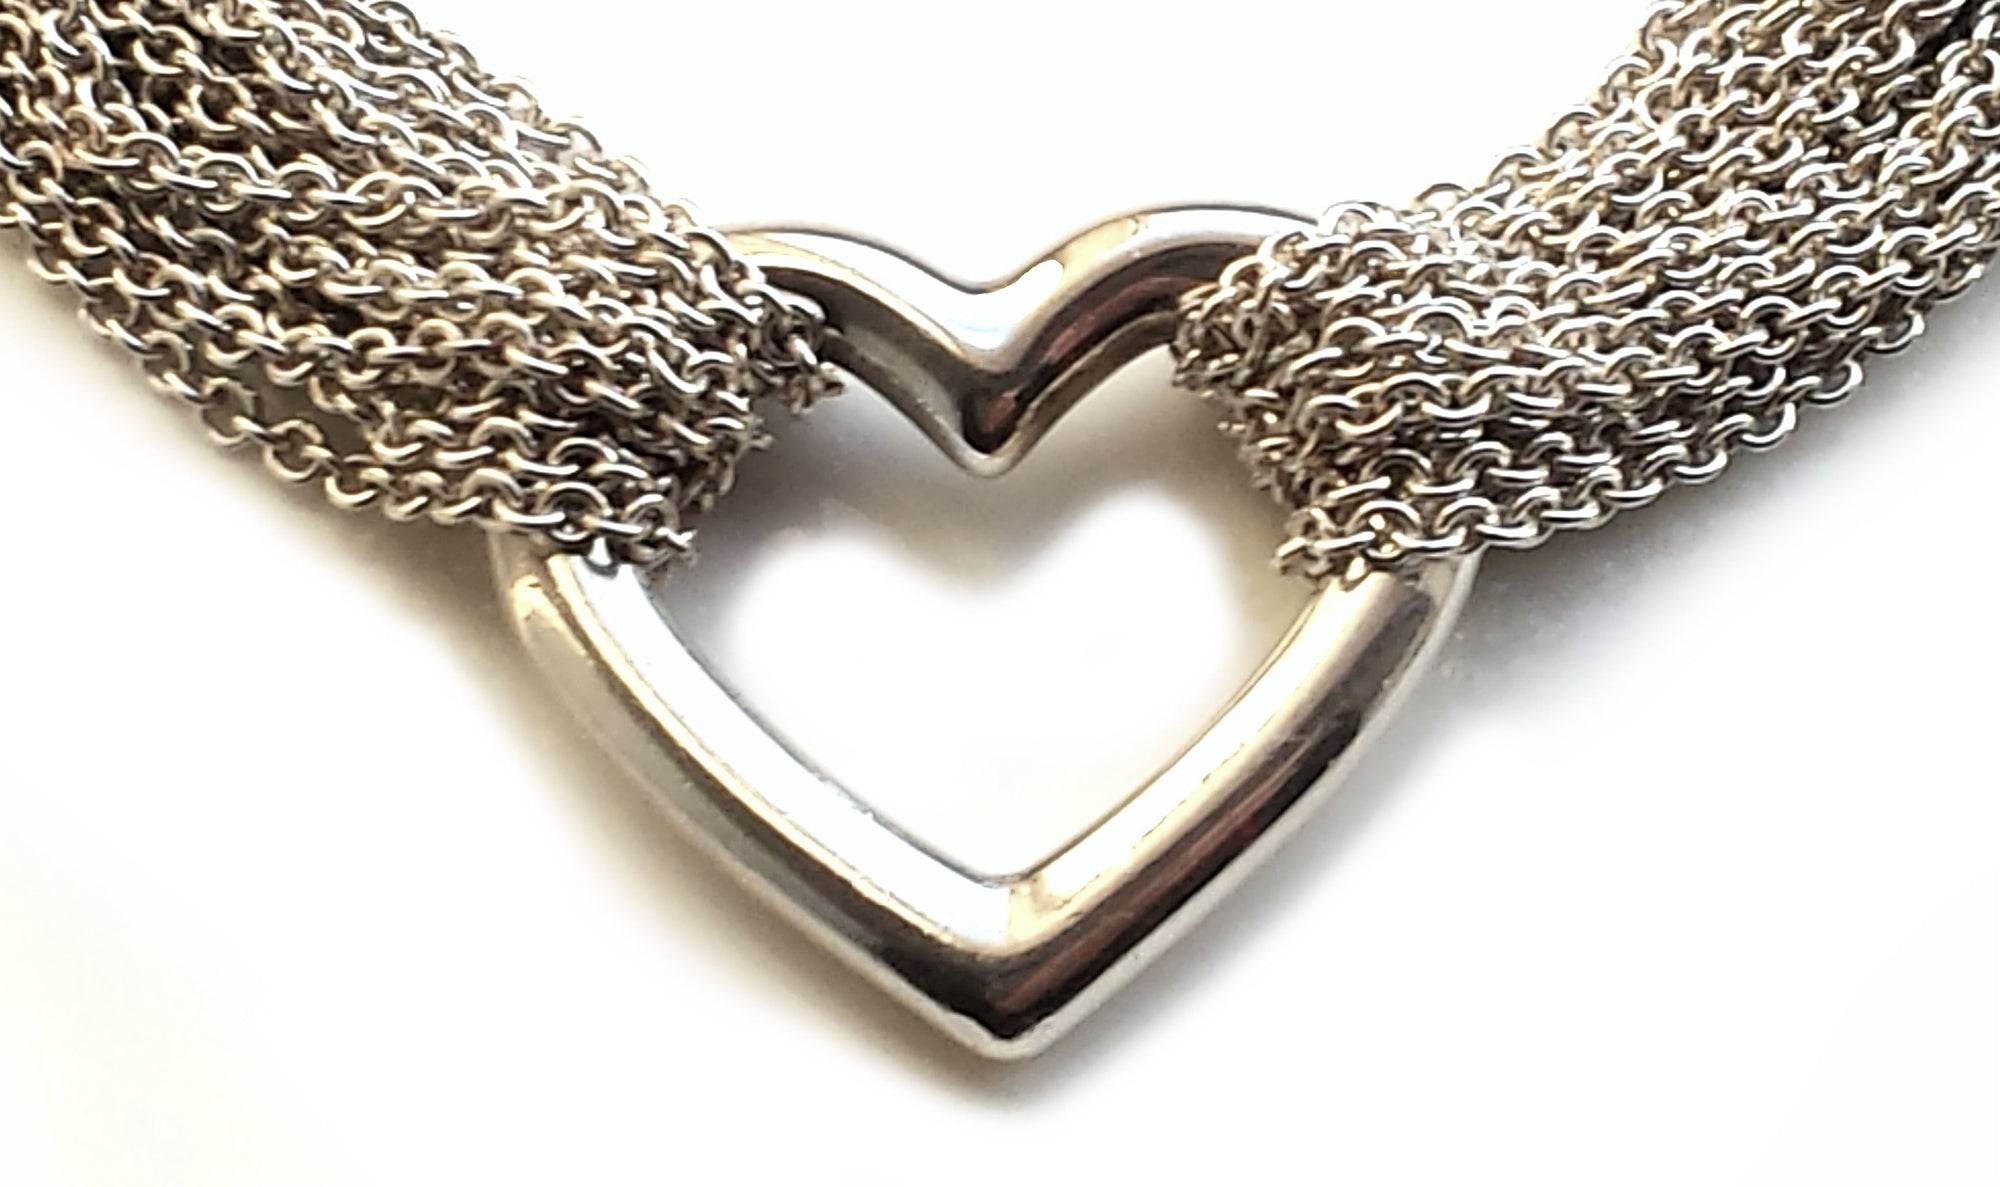 Heart Bracelet Sterling Silver 7